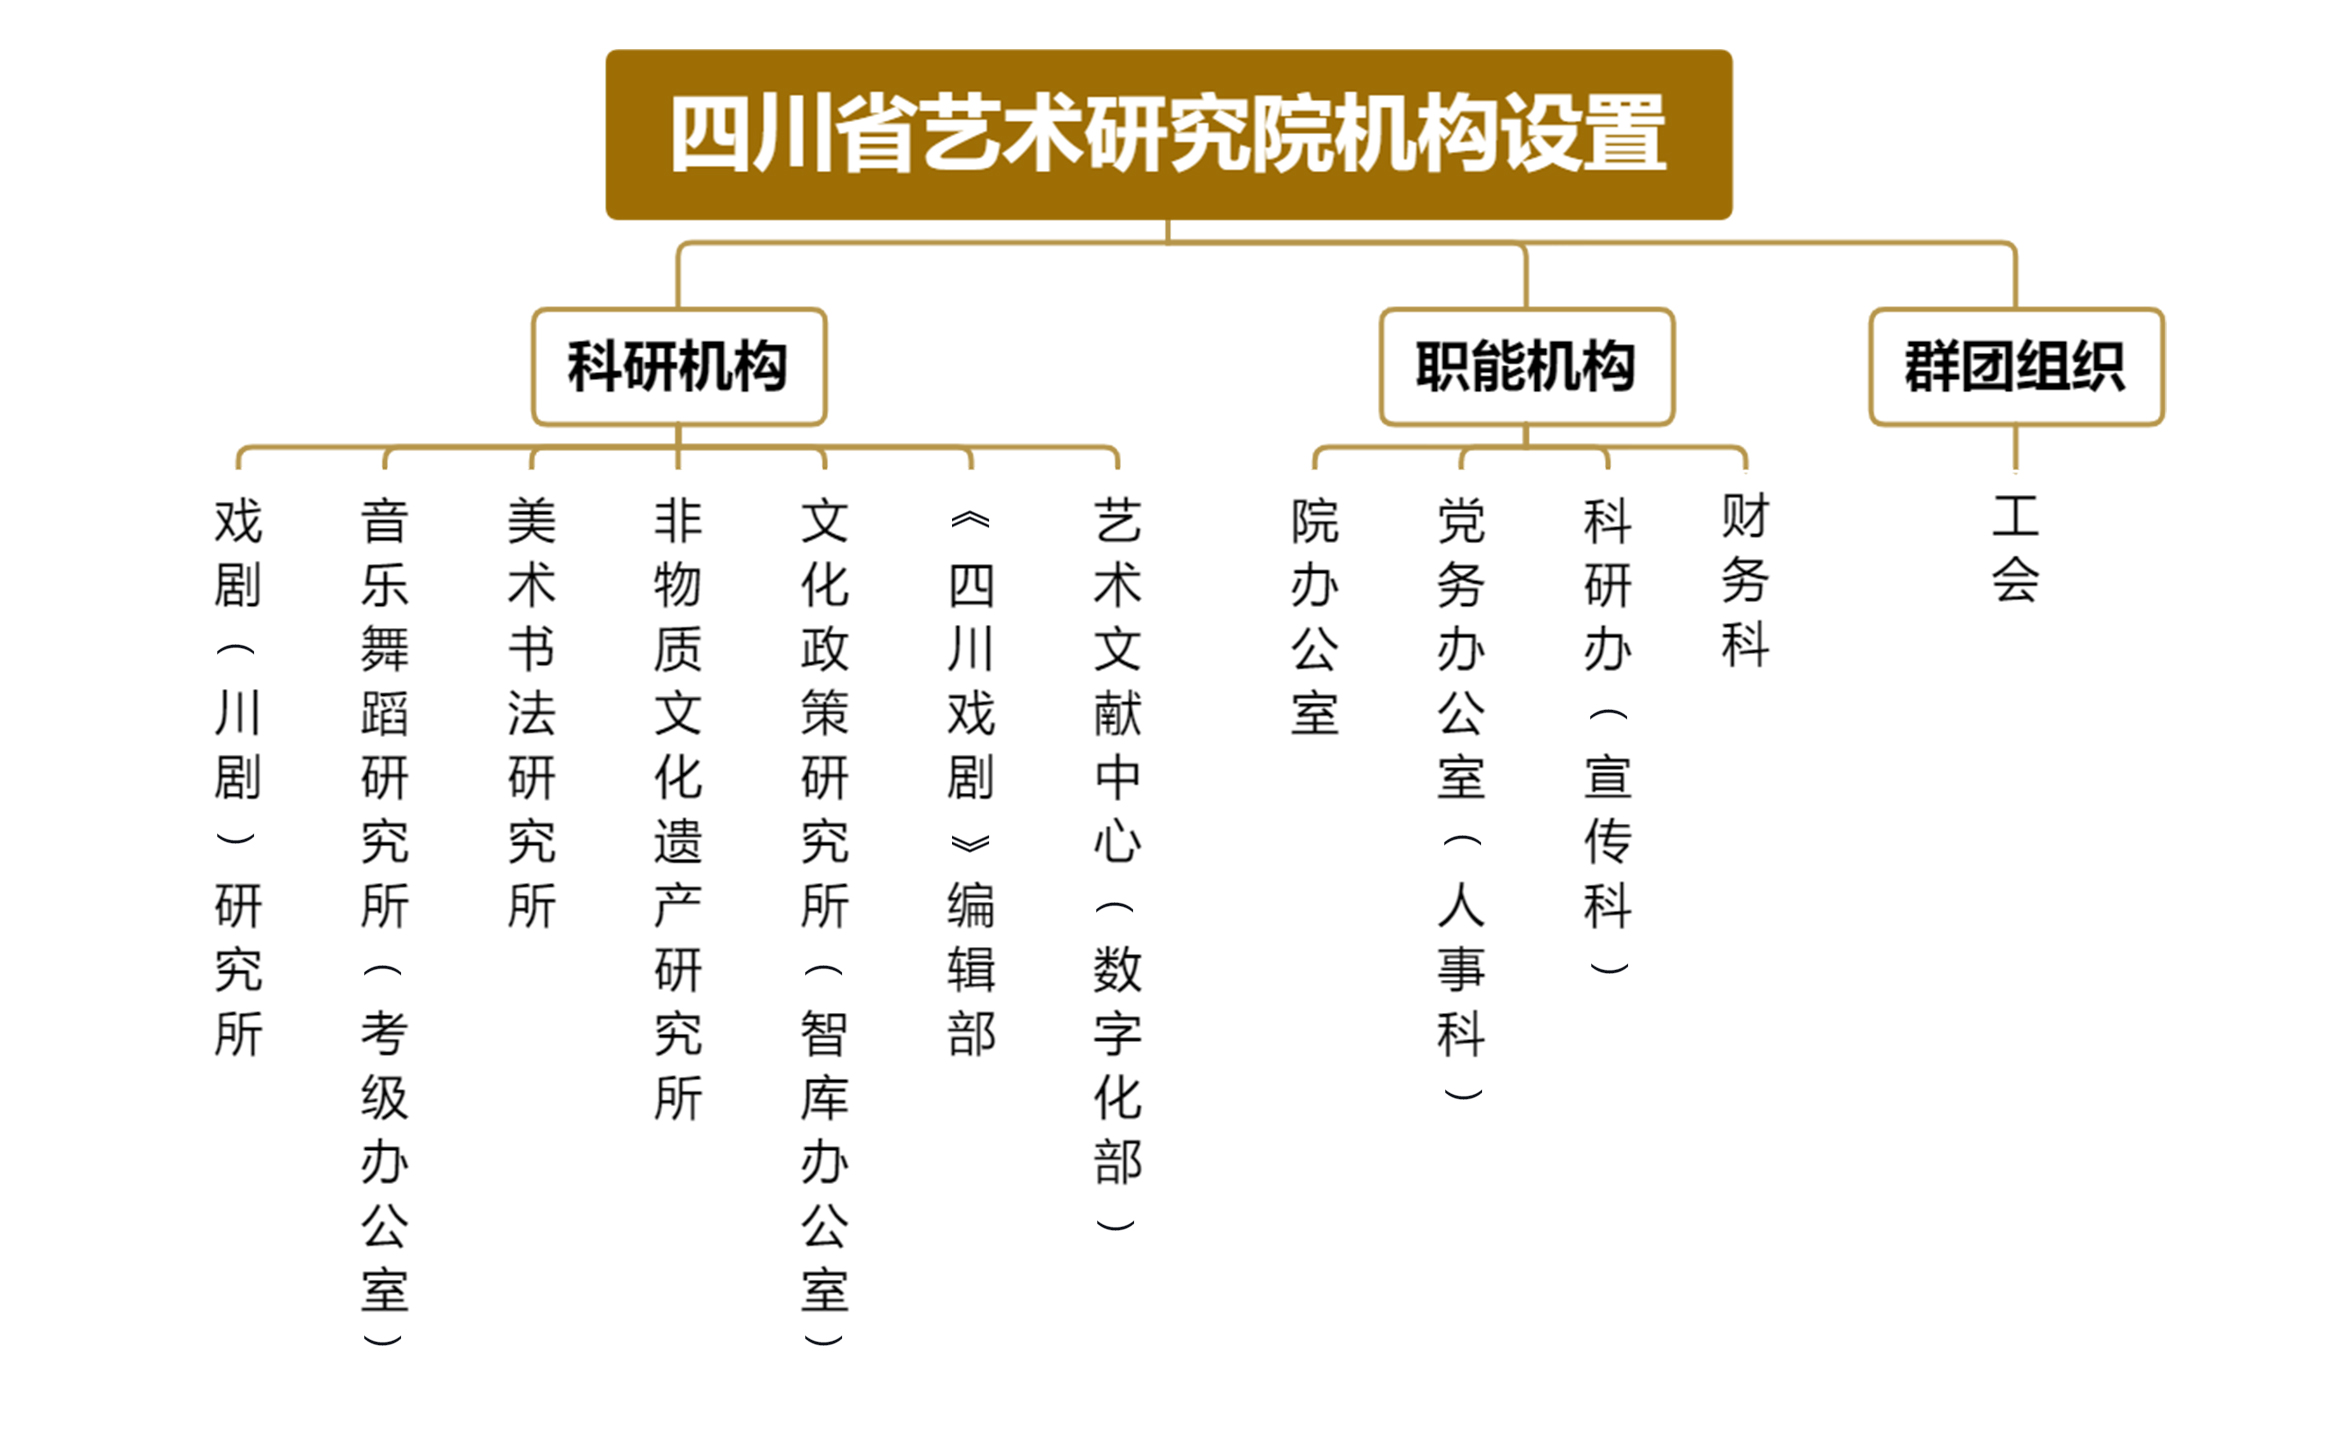 五大联赛押注官网(中国)官方网站机构设置.jpg